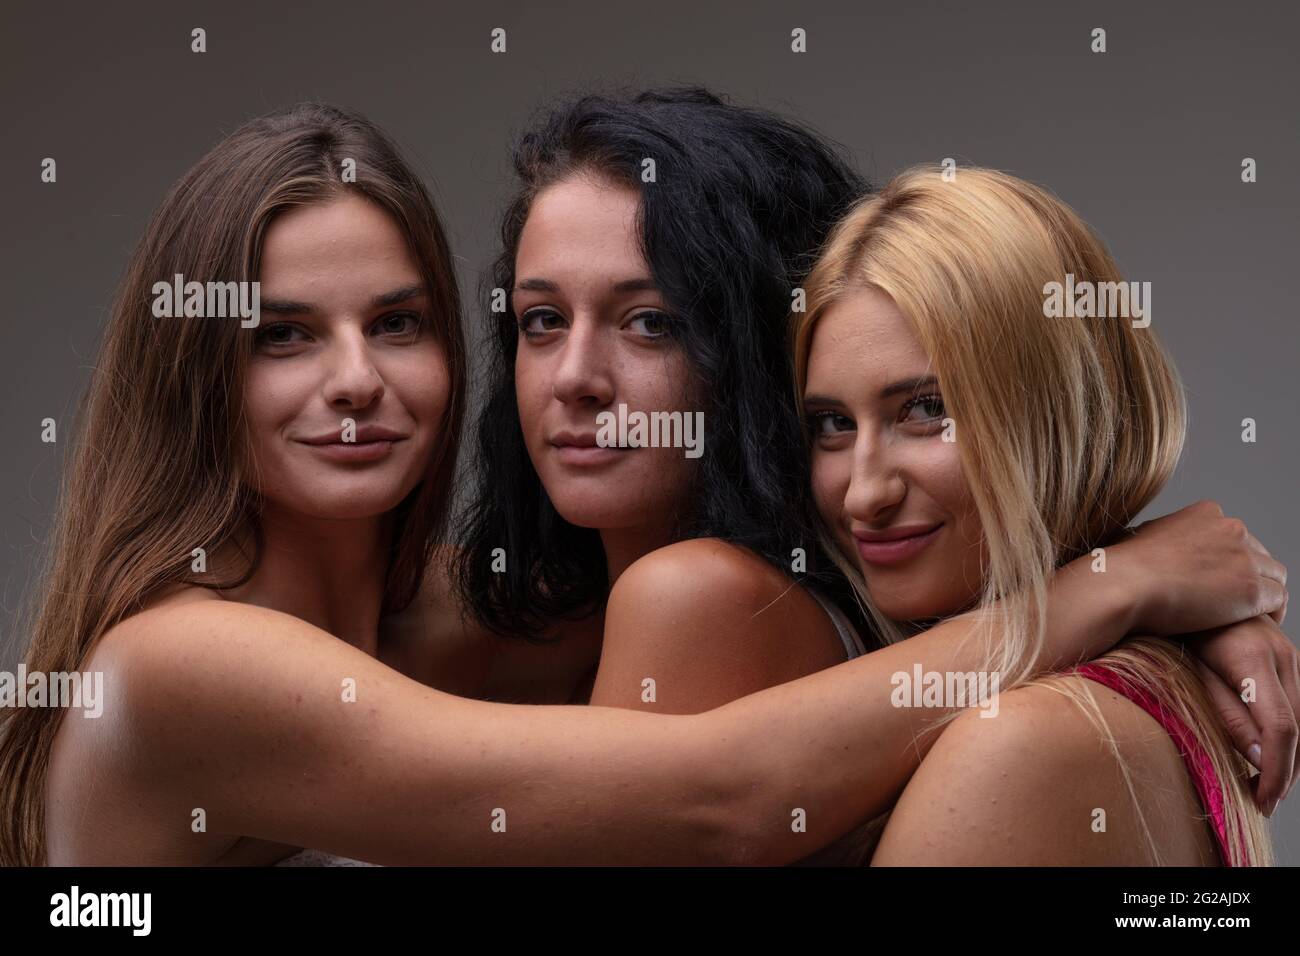 Drei attraktive, freundliche junge Frauen posieren in enger Umarmung und lächeln in einem Kopf- und Schulterporträt vor einem grauen Studio-Backgroun vor der Kamera Stockfoto